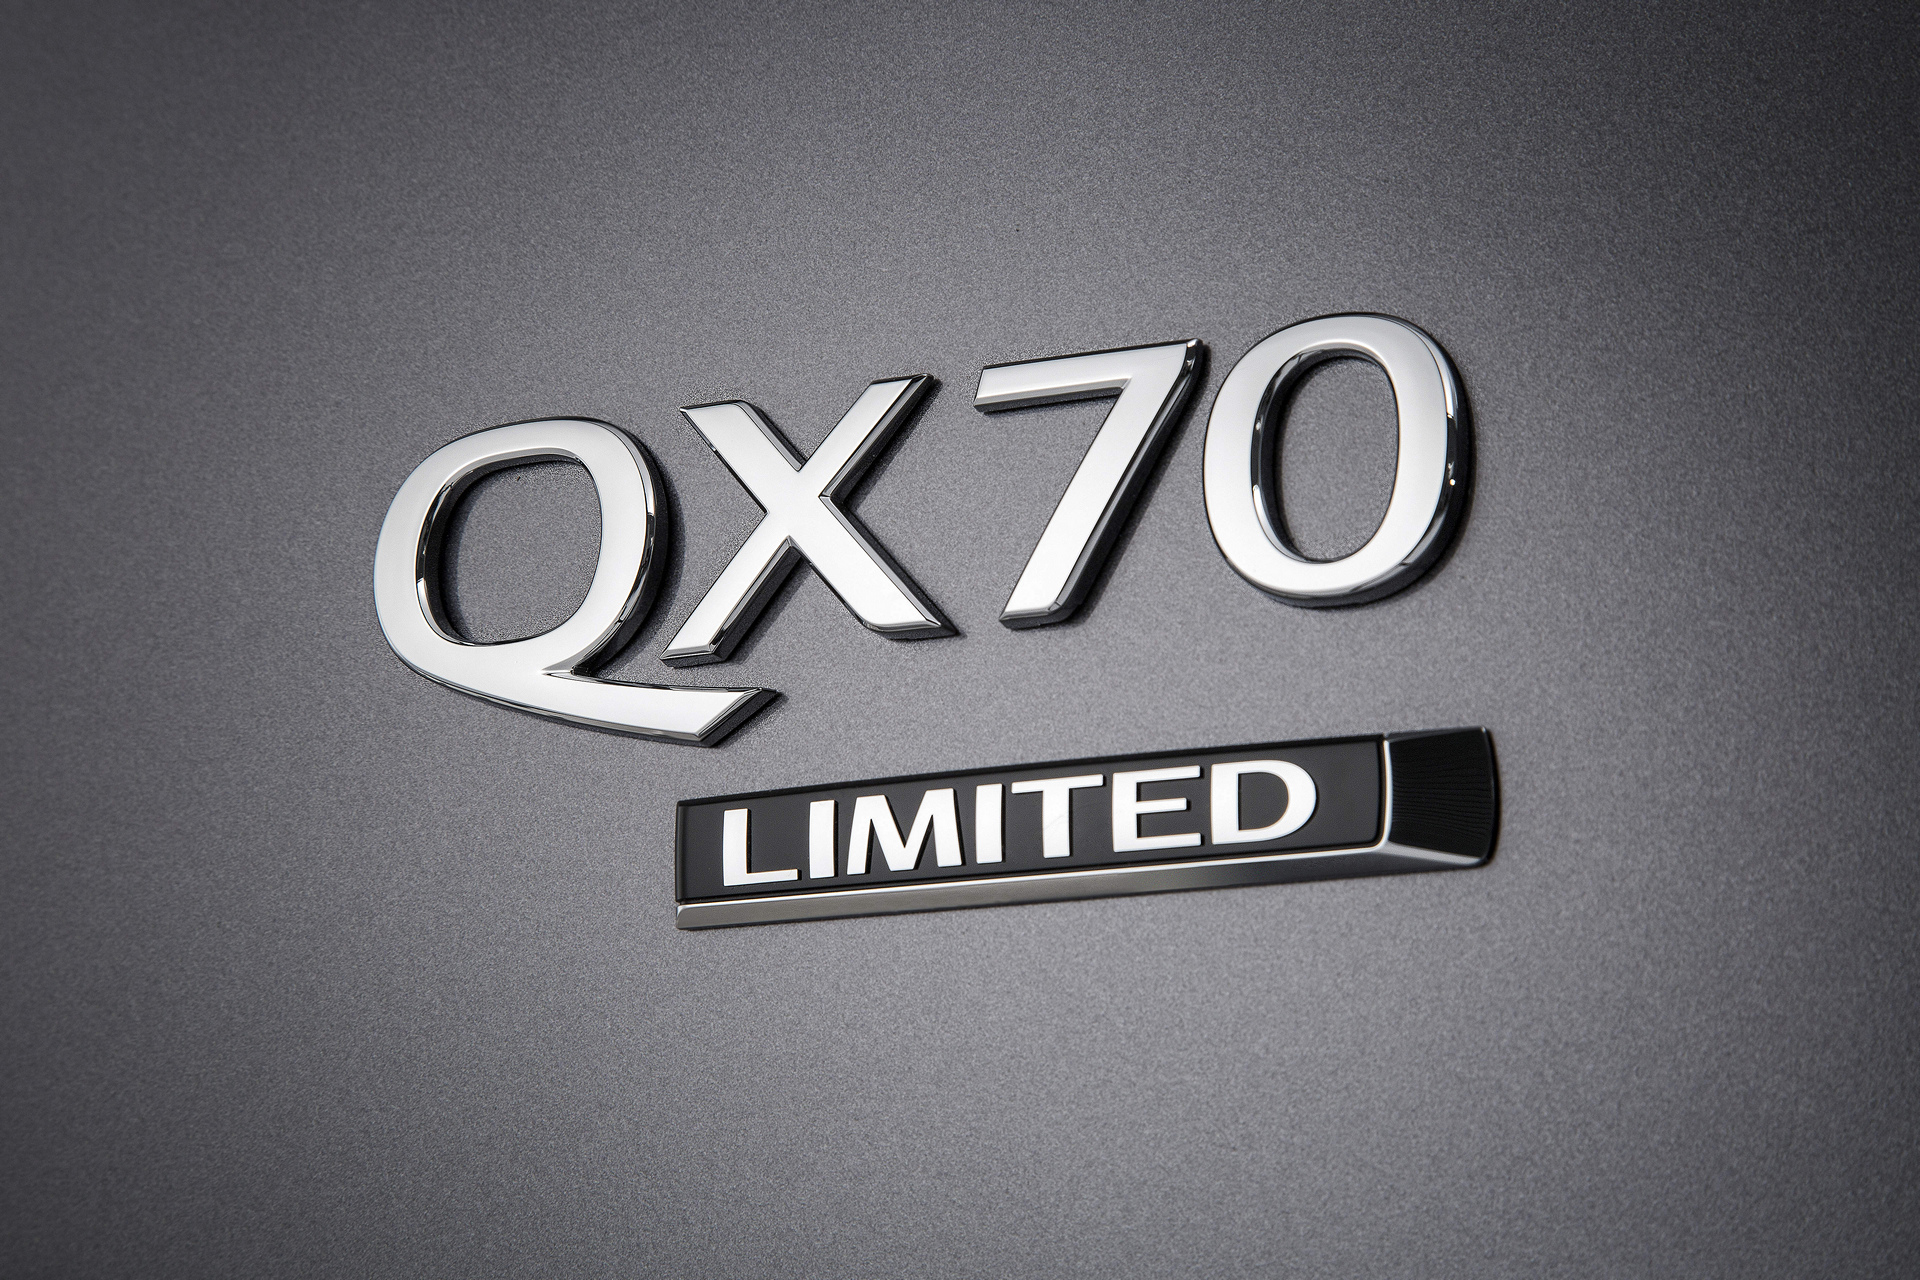 2017 Infiniti QX70 Limited © Nissan Motor Co., Ltd.